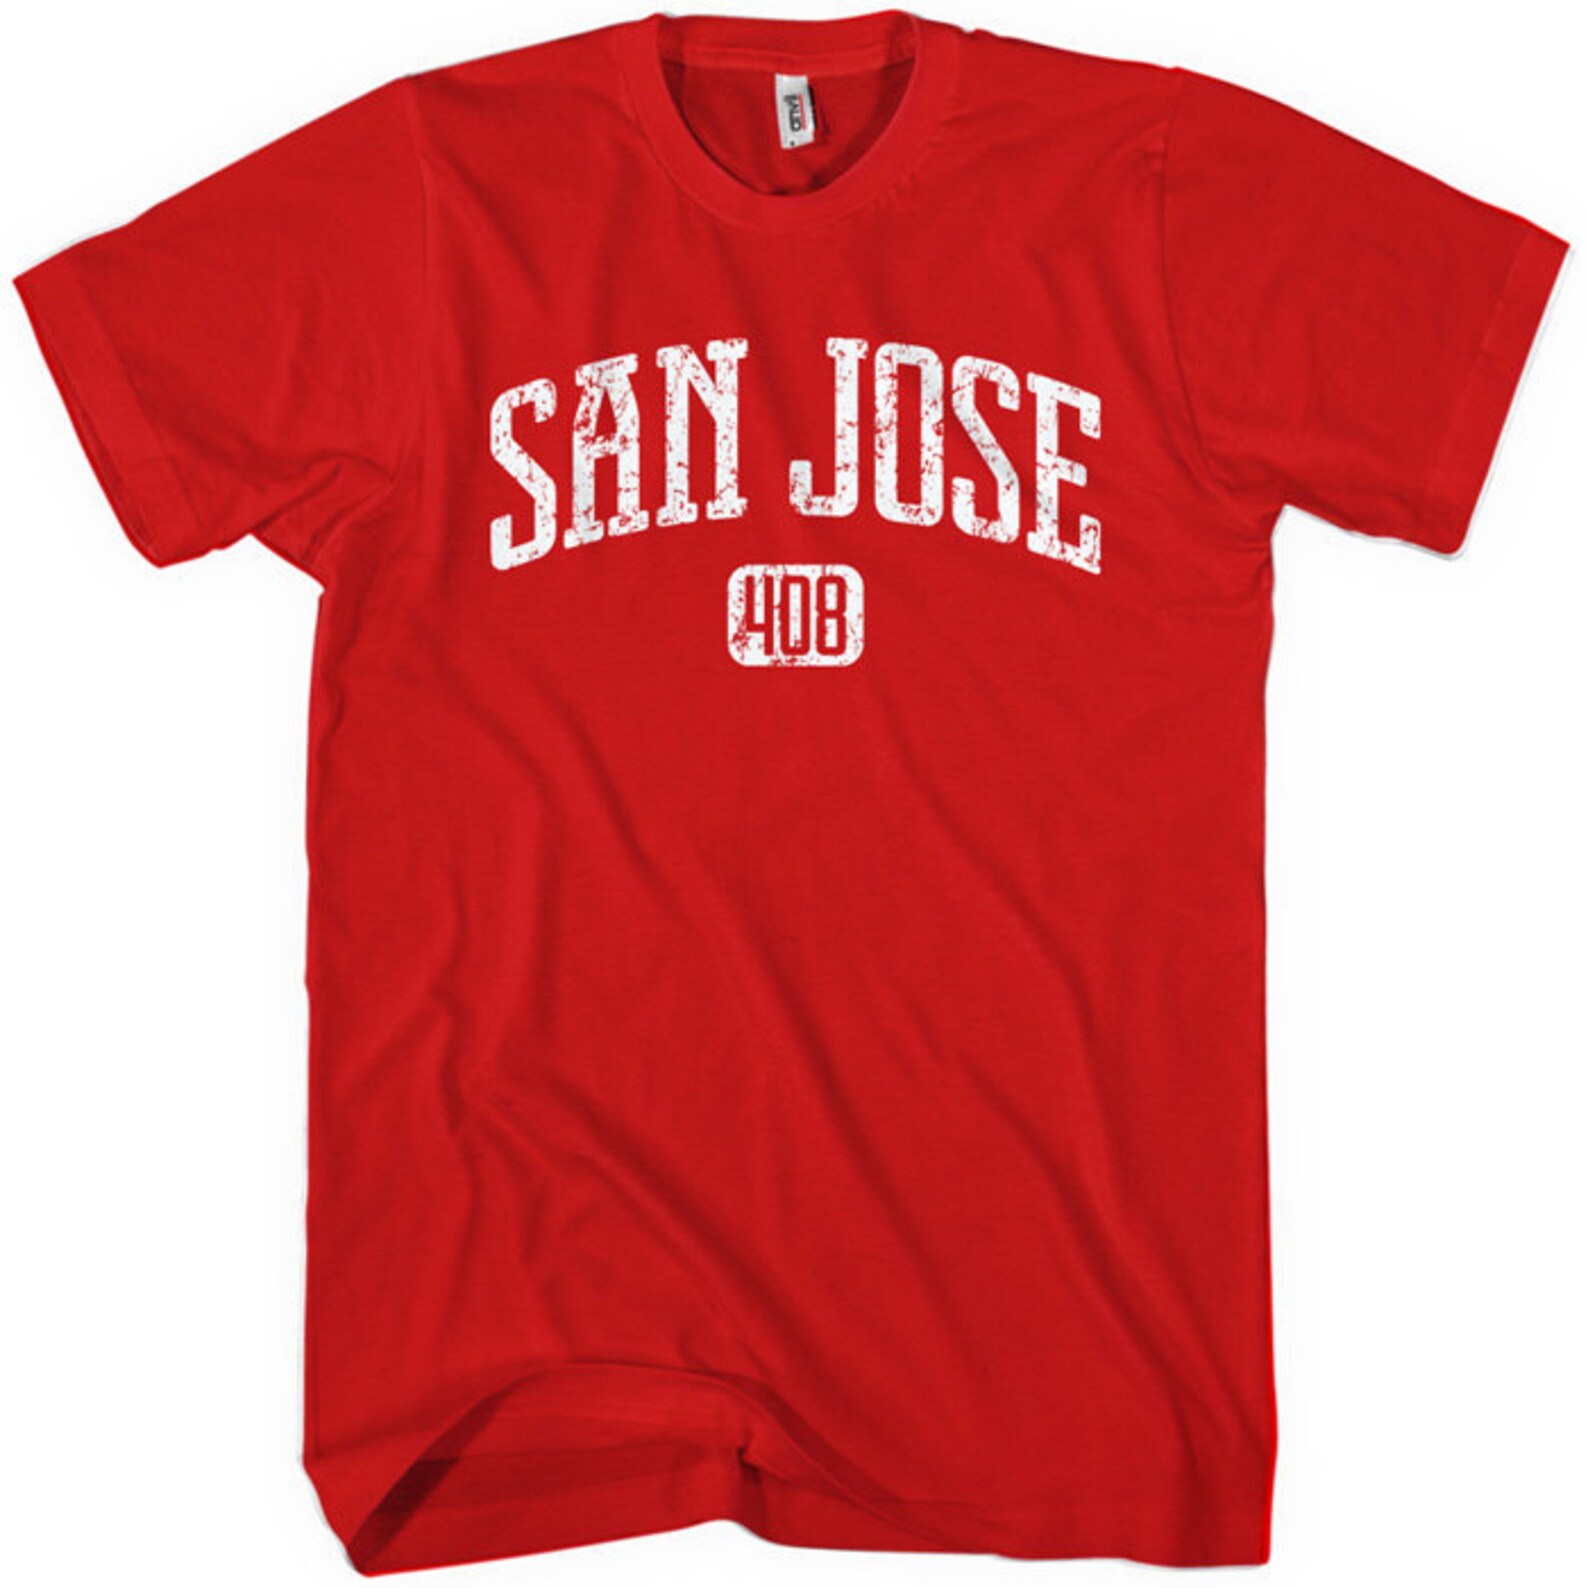 San Jose 408 T-shirt Men and Unisex XS S M L XL 2x 3x 4x | Etsy